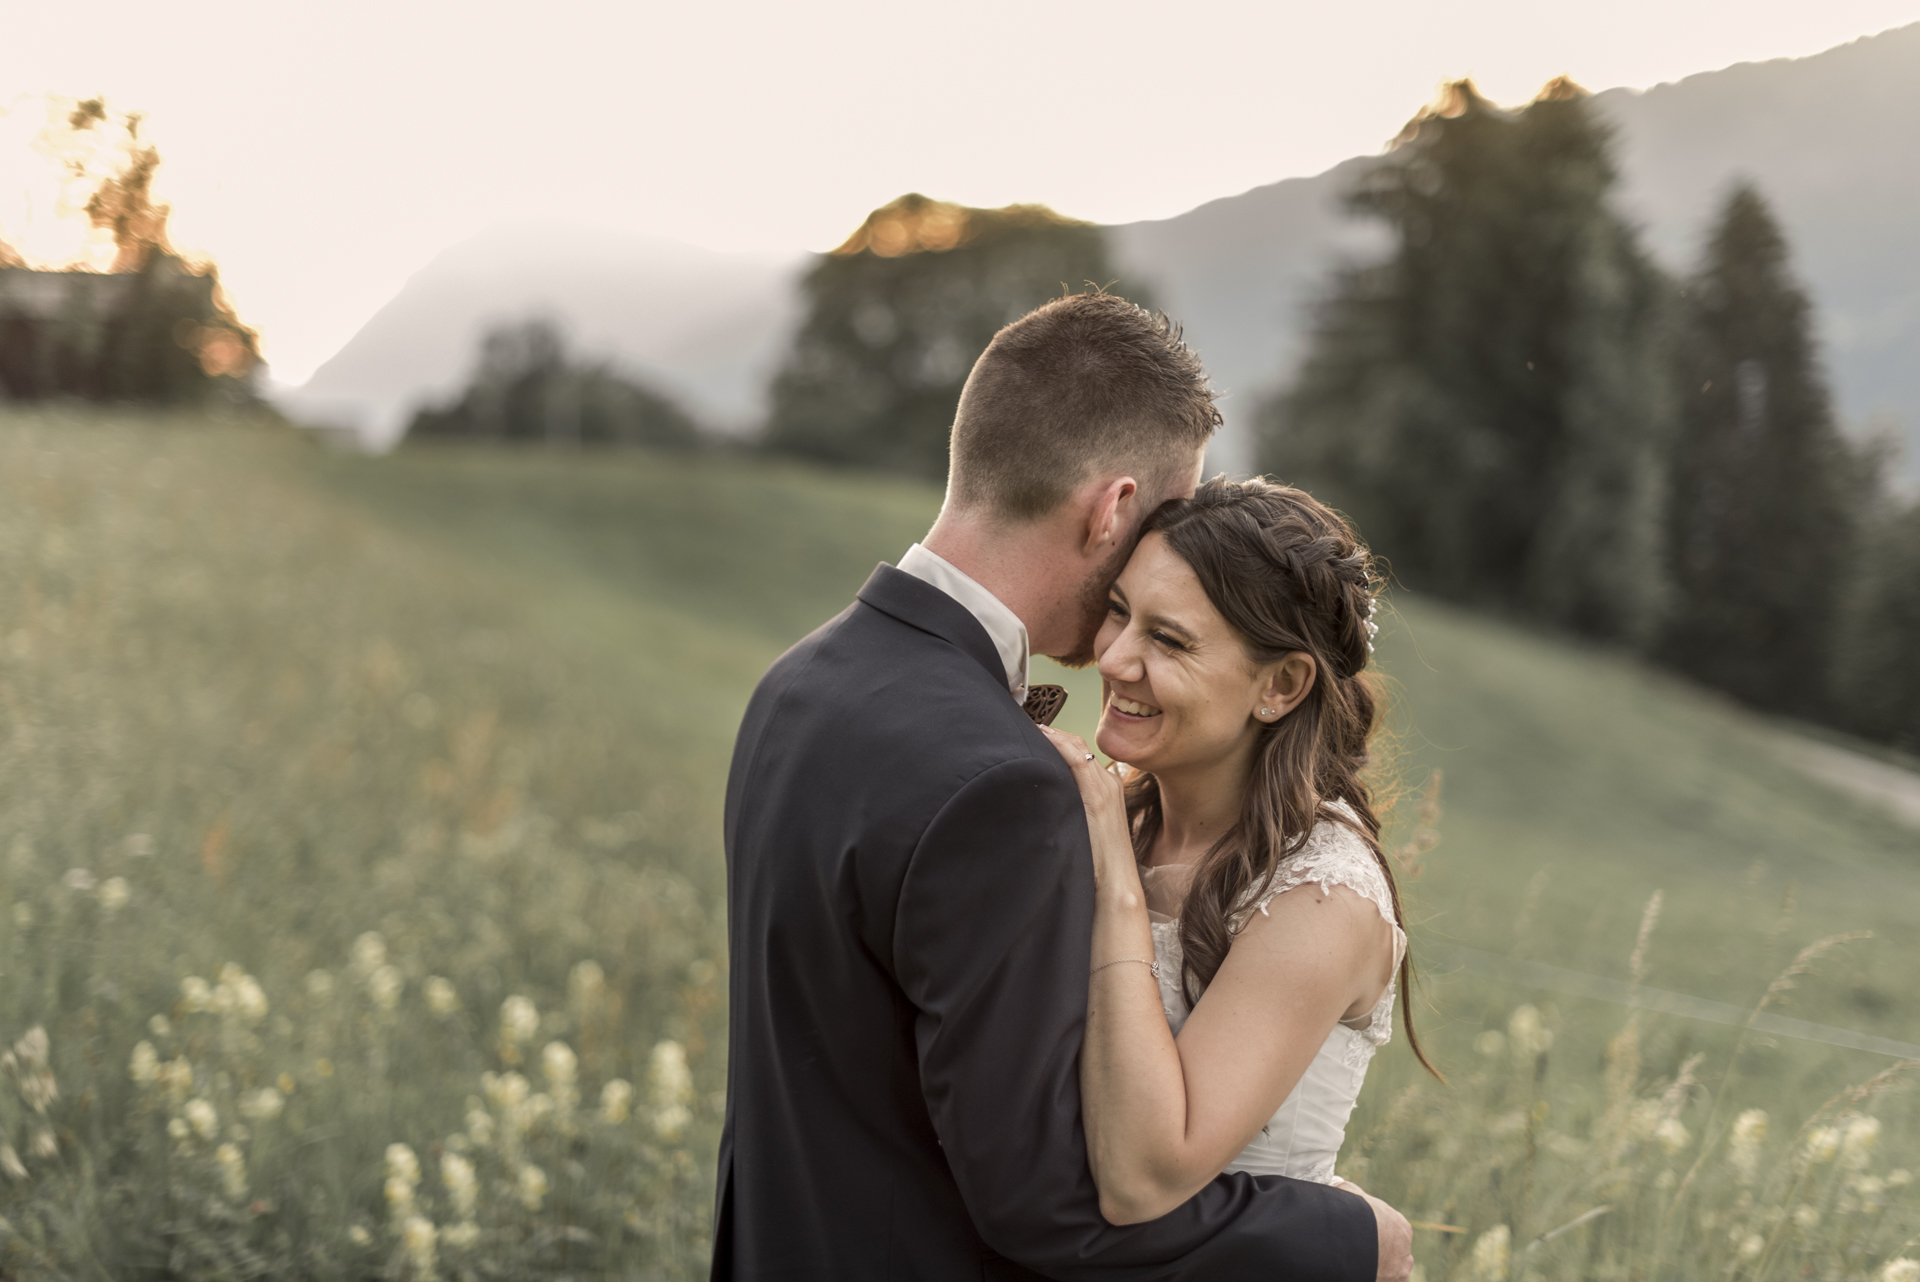 Photographe de mariage à Thonon- les-bains et en Haute-Savoie- Séance couple